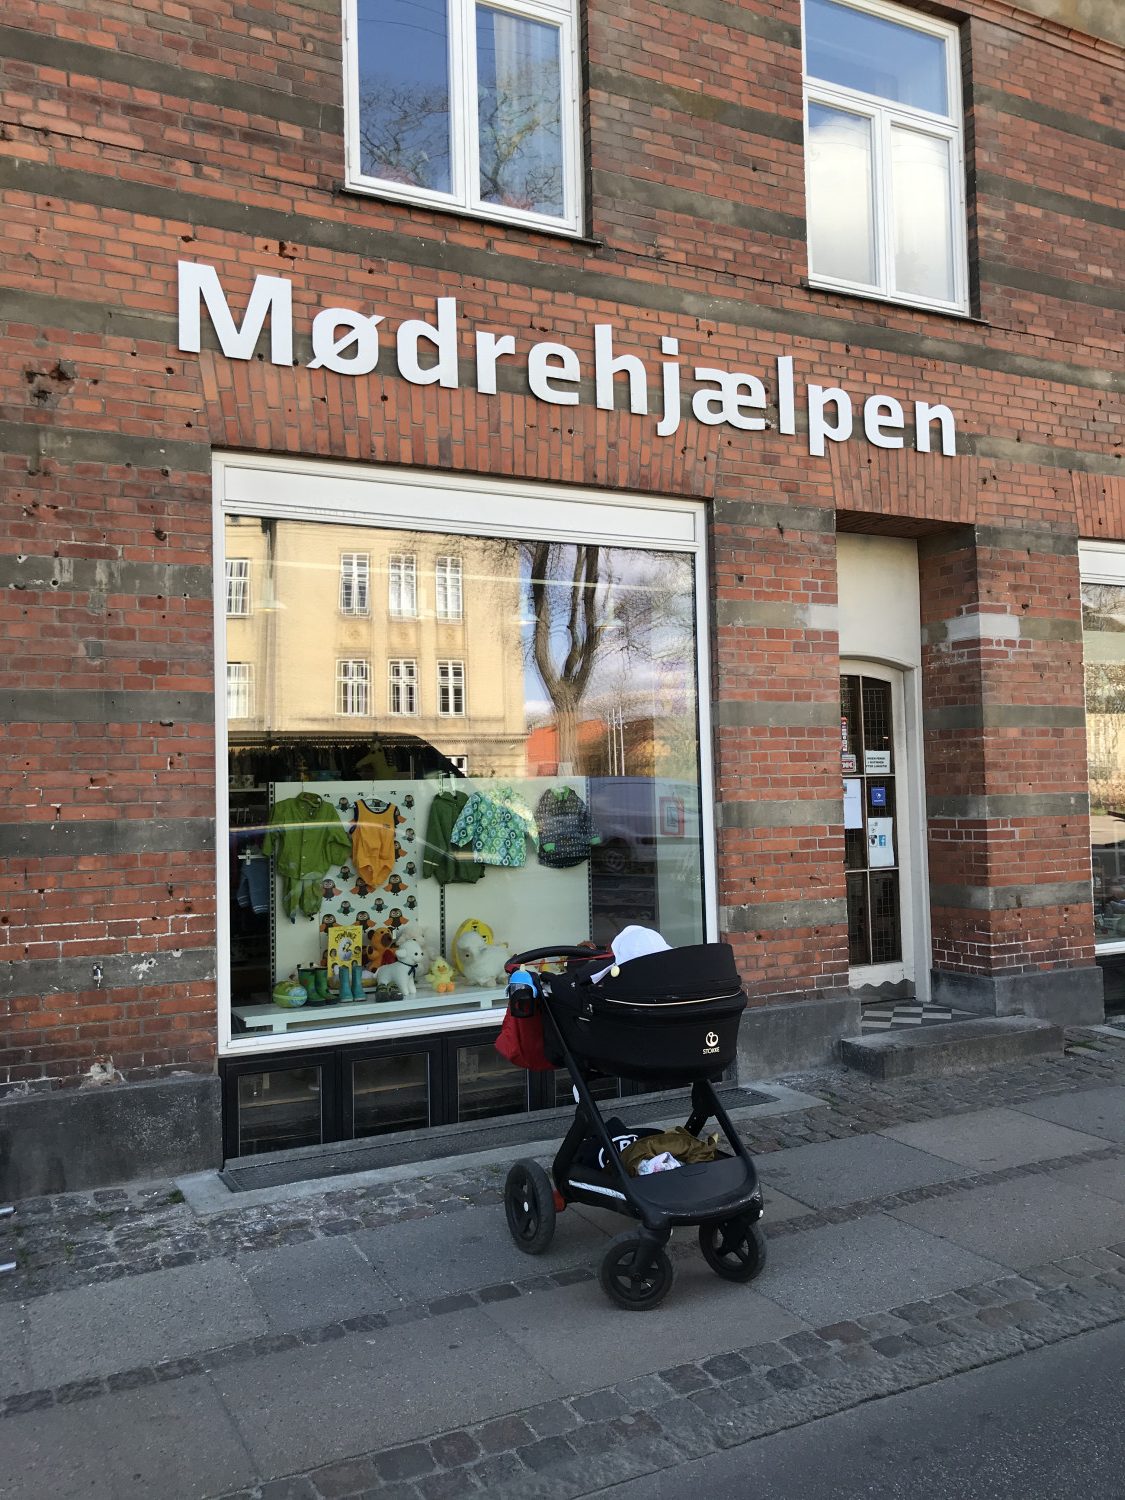 brugt børnetøj i København FASHION | Blog